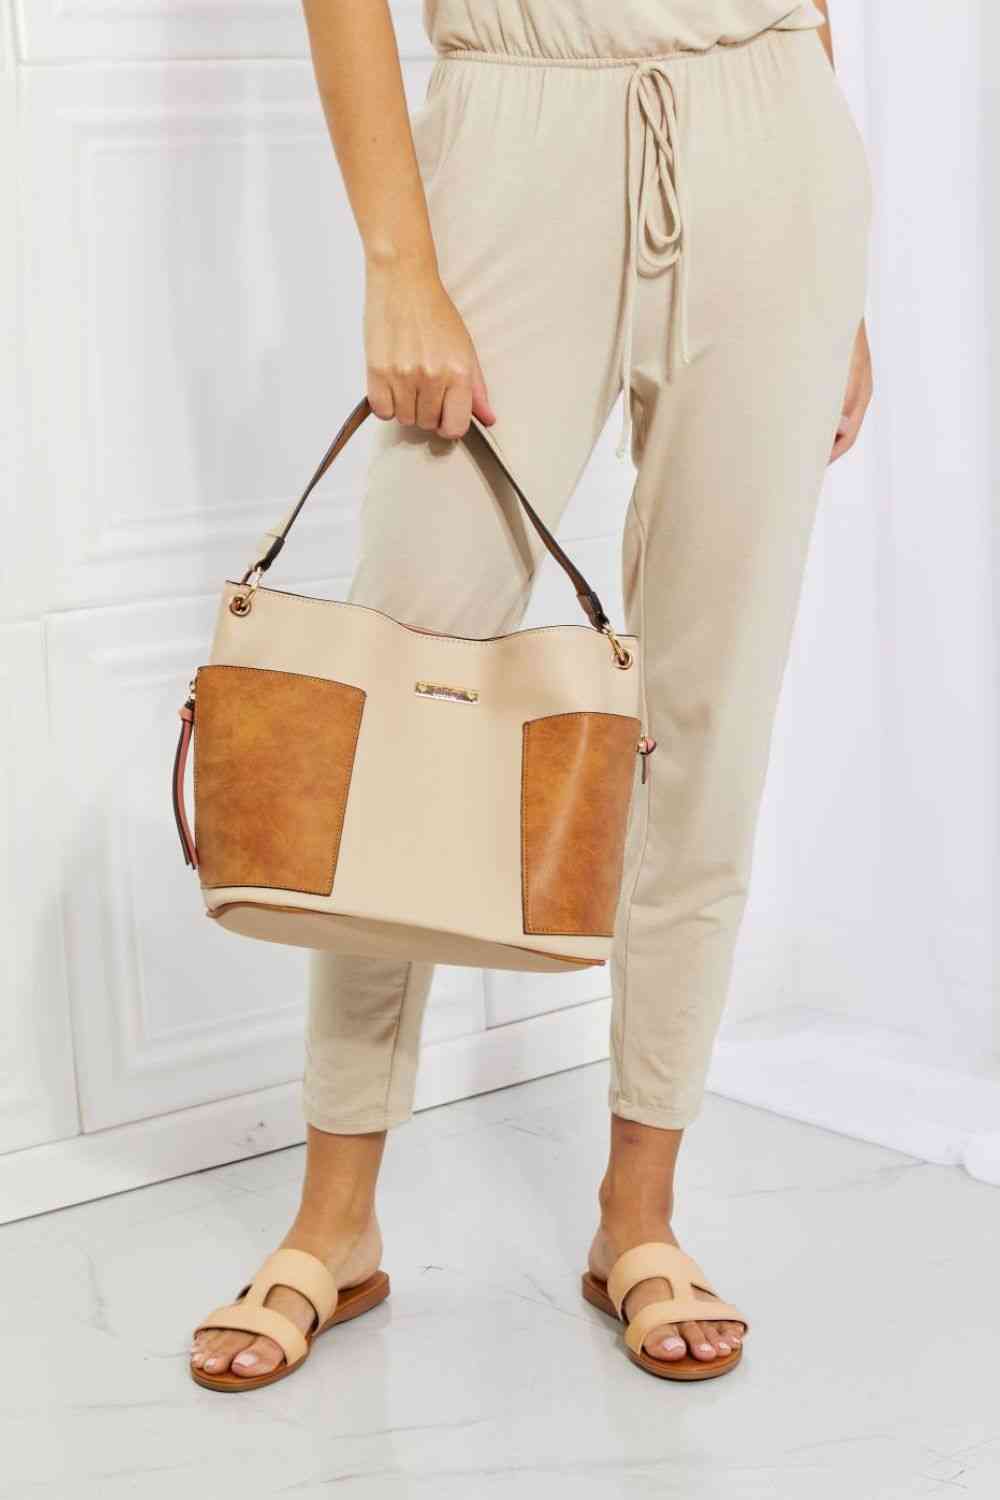 fashion women bag, lacoste women bag, small women bag, women bag leather, guess women bag